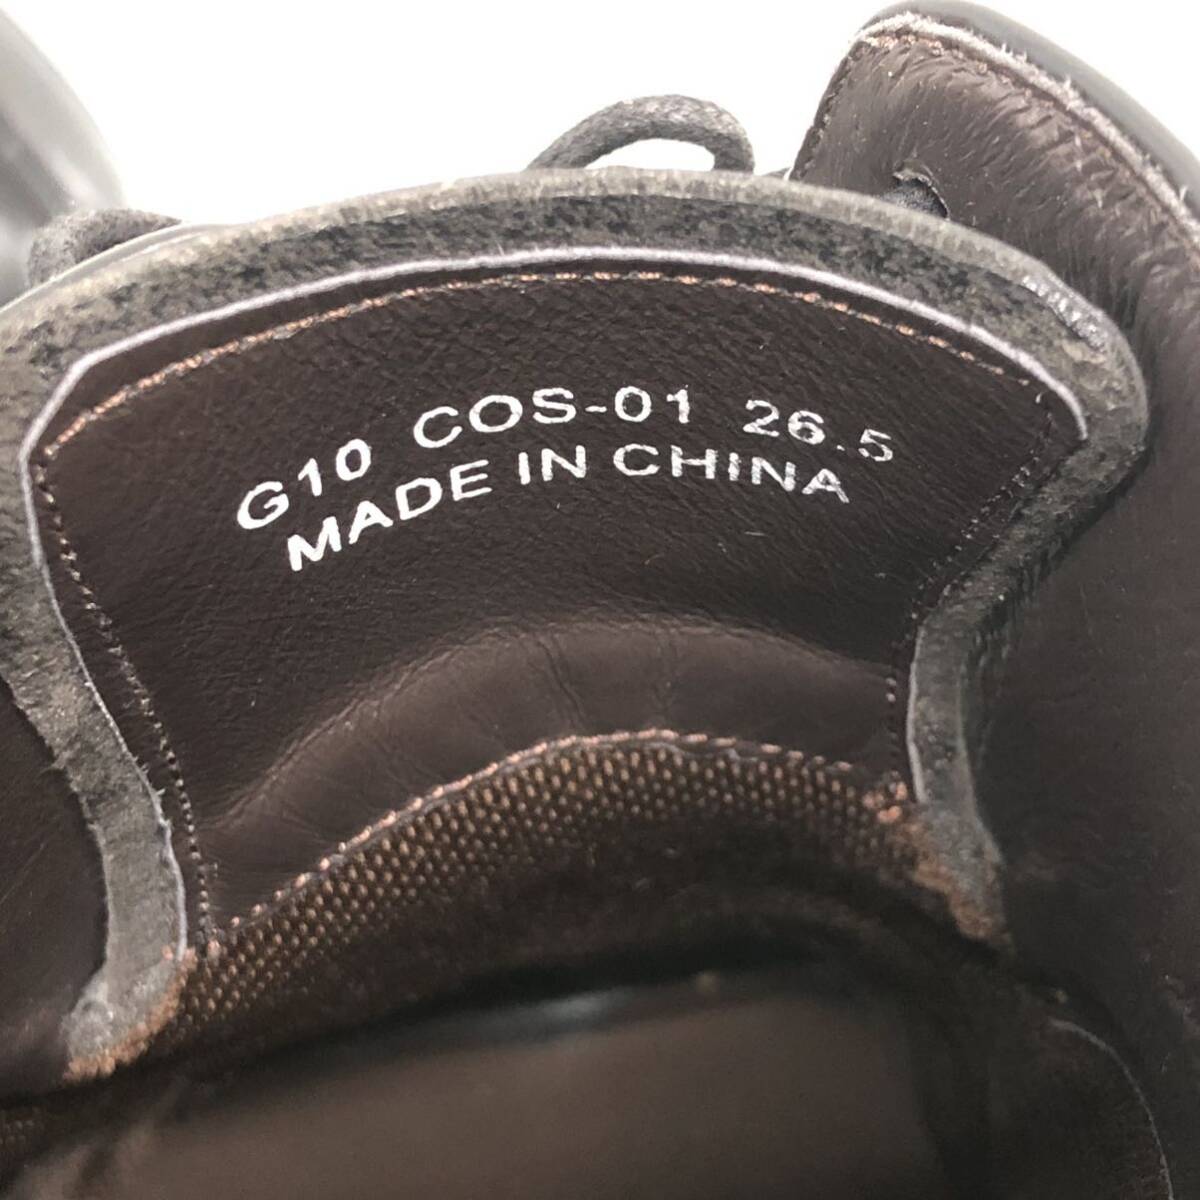 T■ CRISTIAN ORANI クリスチャン オラーニ レザー ビジネスシューズ 革靴 ブラック 黒 フォーマルシューズ G10 COS-01 26.5cm メンズ 中古の画像9